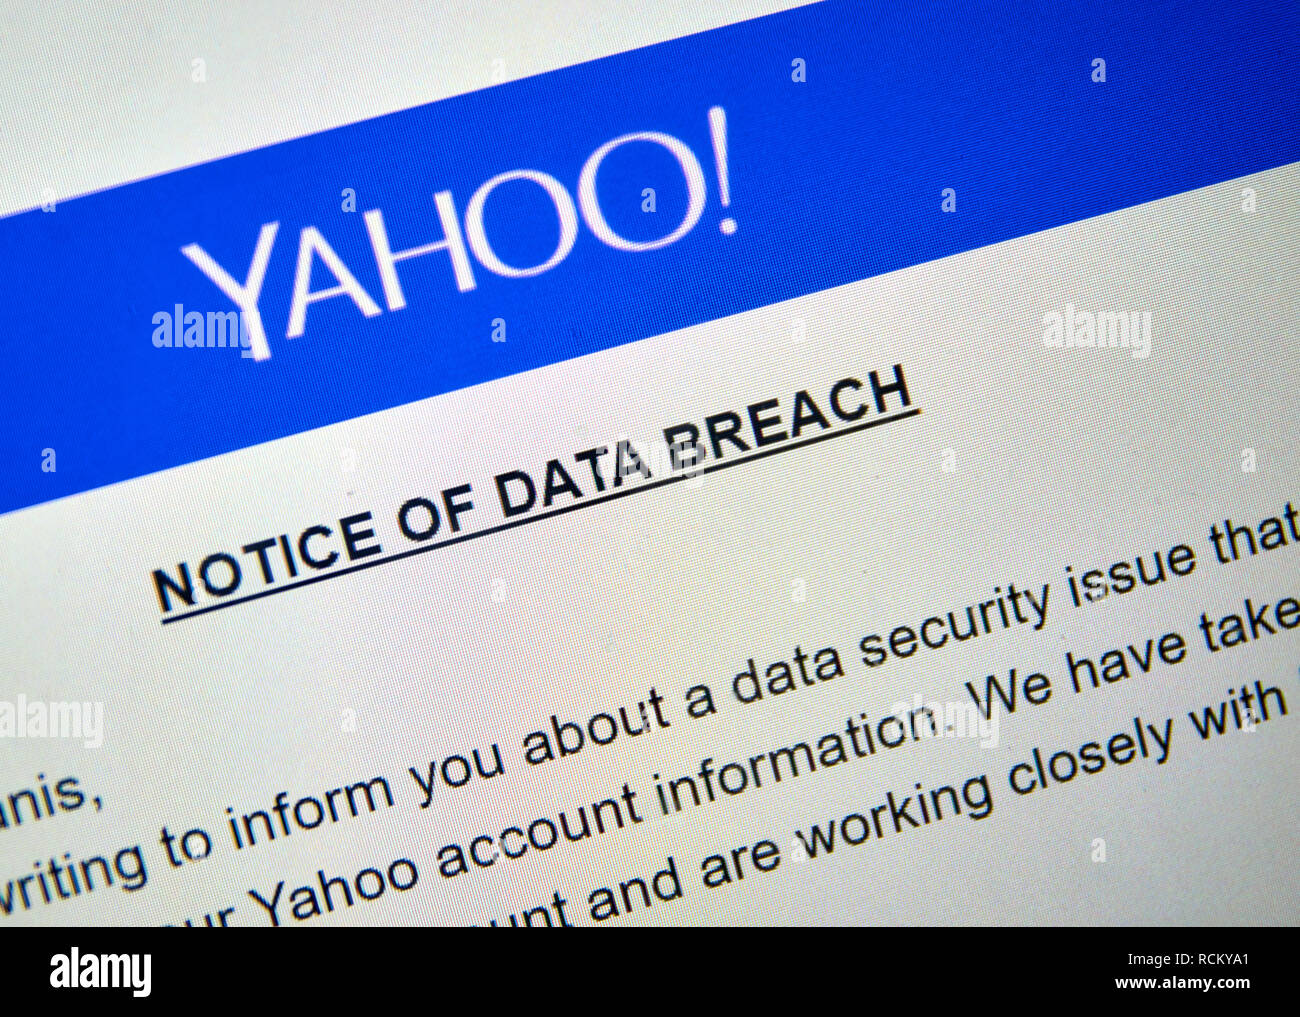 MONTREAL, Canada - 15 dicembre 2016 : Yahoo avviso di violazione dei dati immagine di schermo di computer portatile. Foto Stock